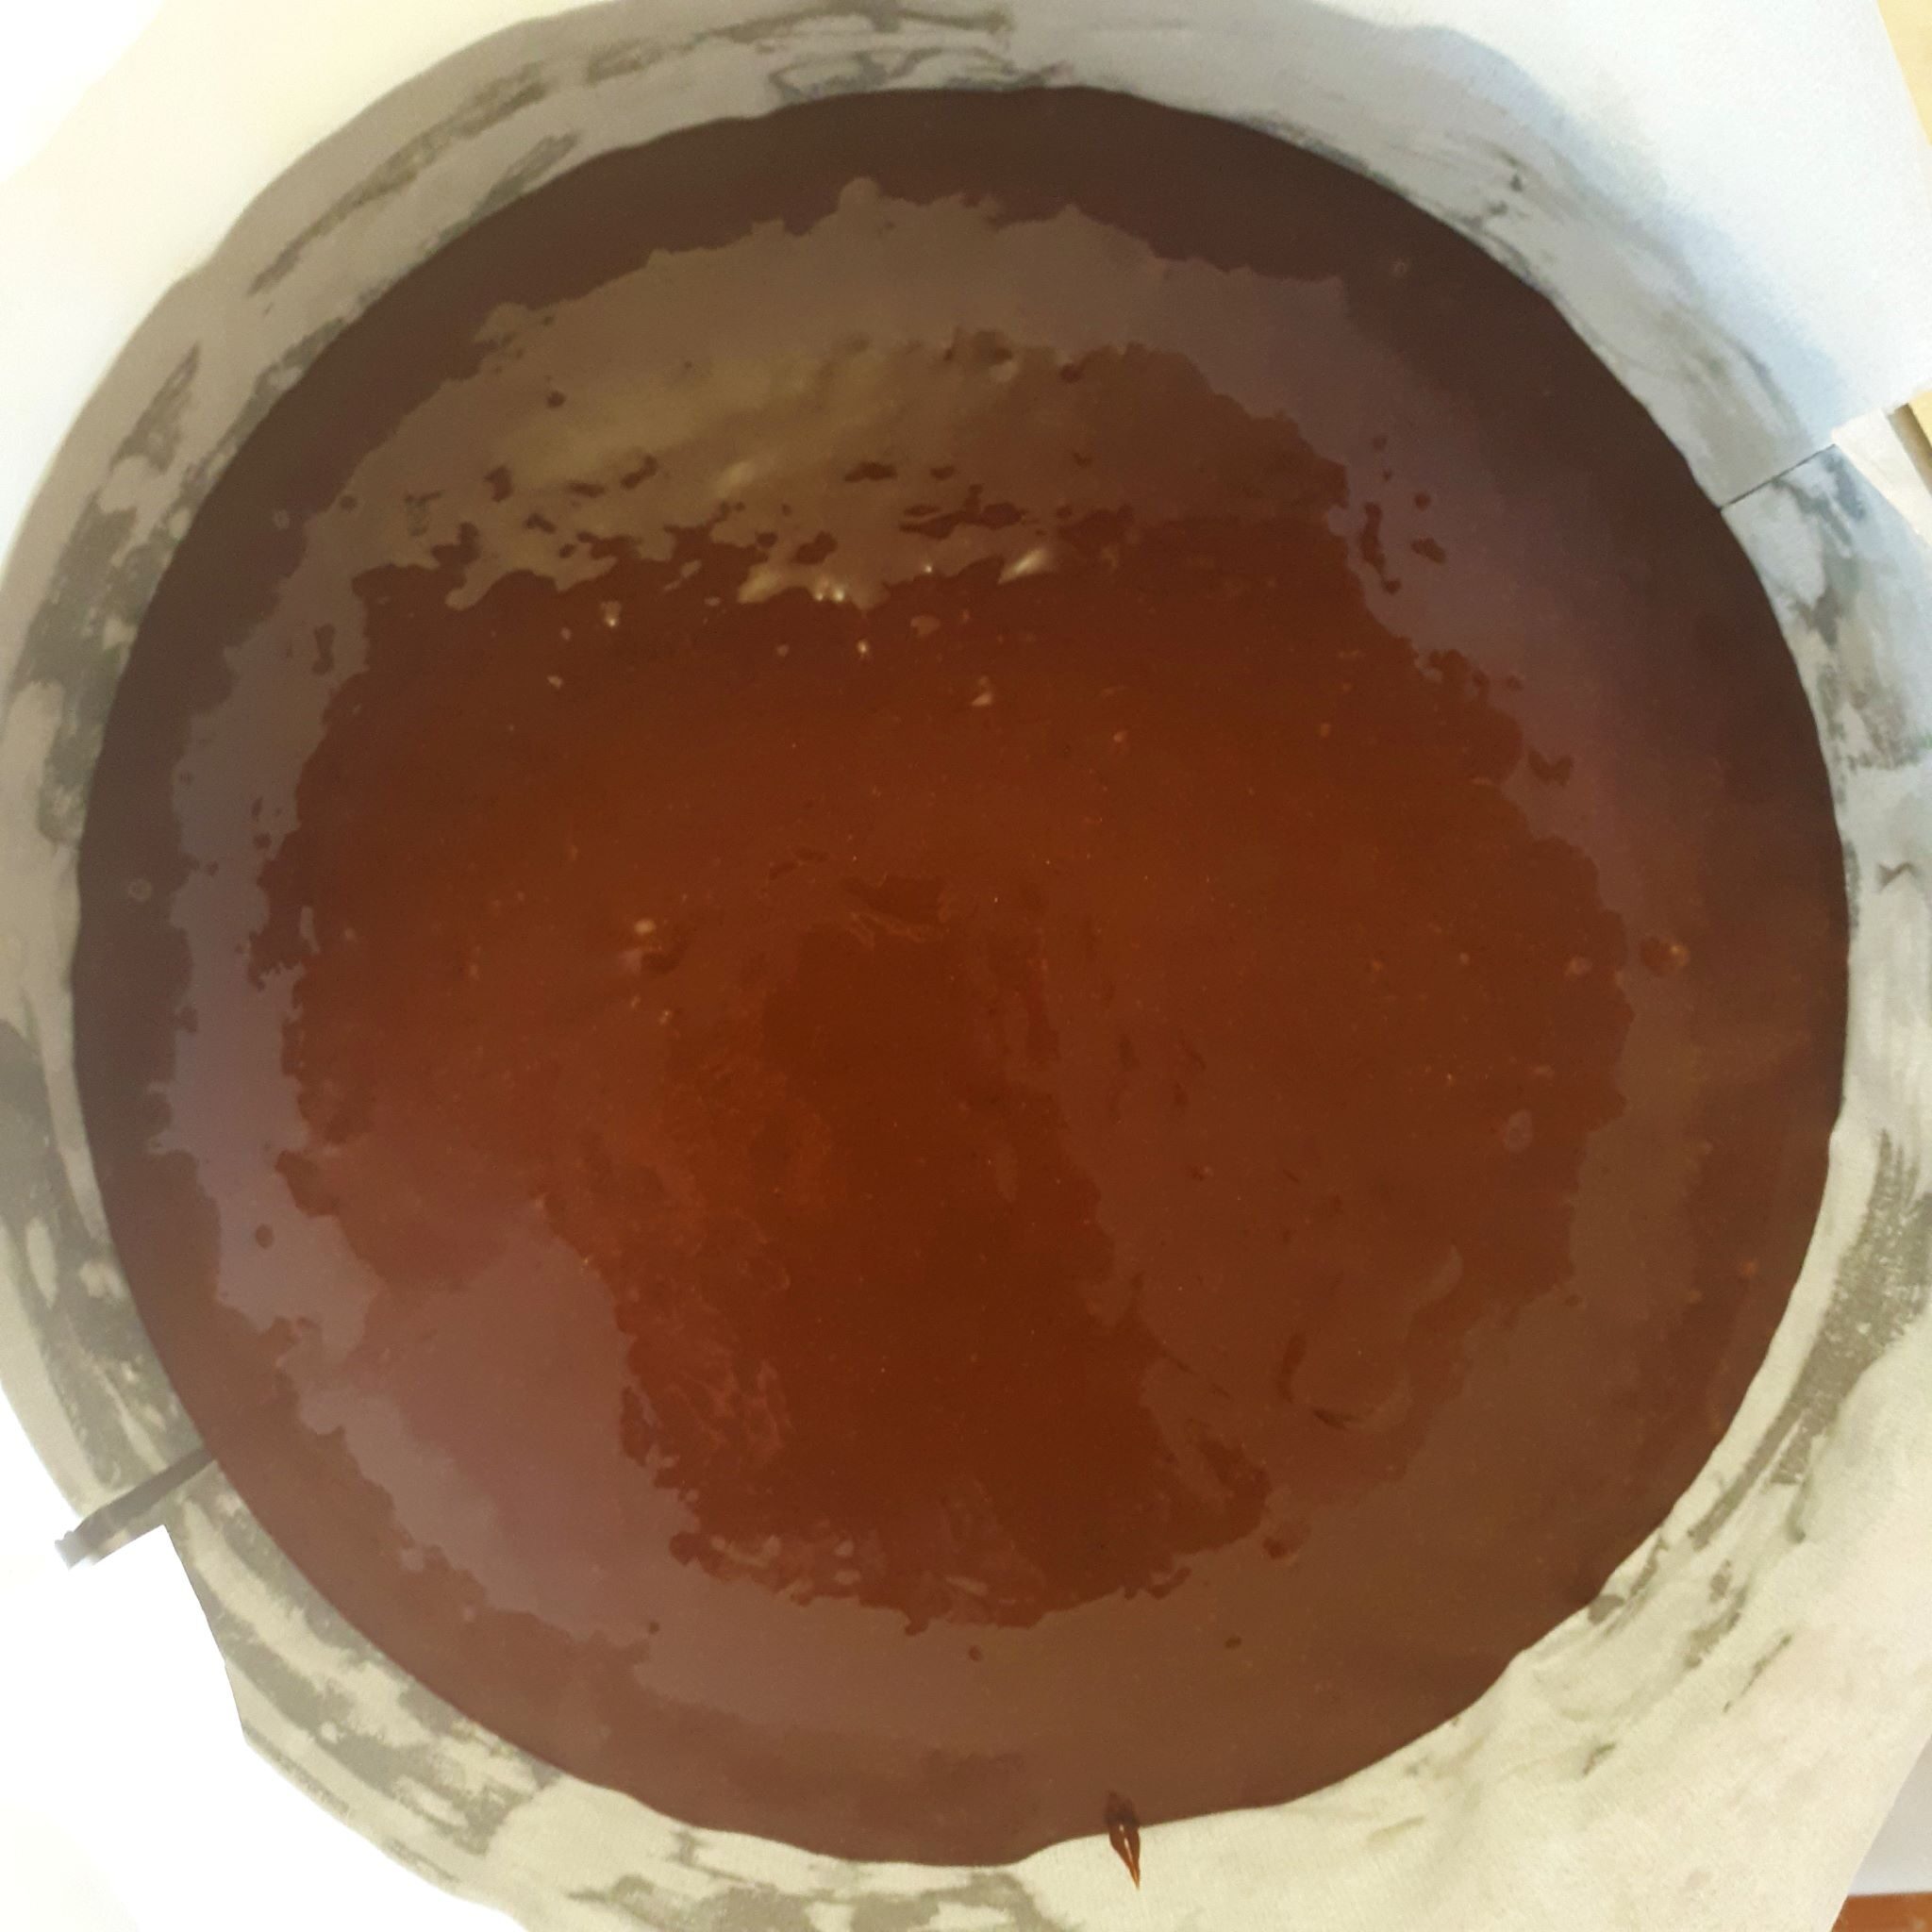 Čokoládové cesto pred pečením v okrúhlej tortovej forme vystlanej papierom na pečenie